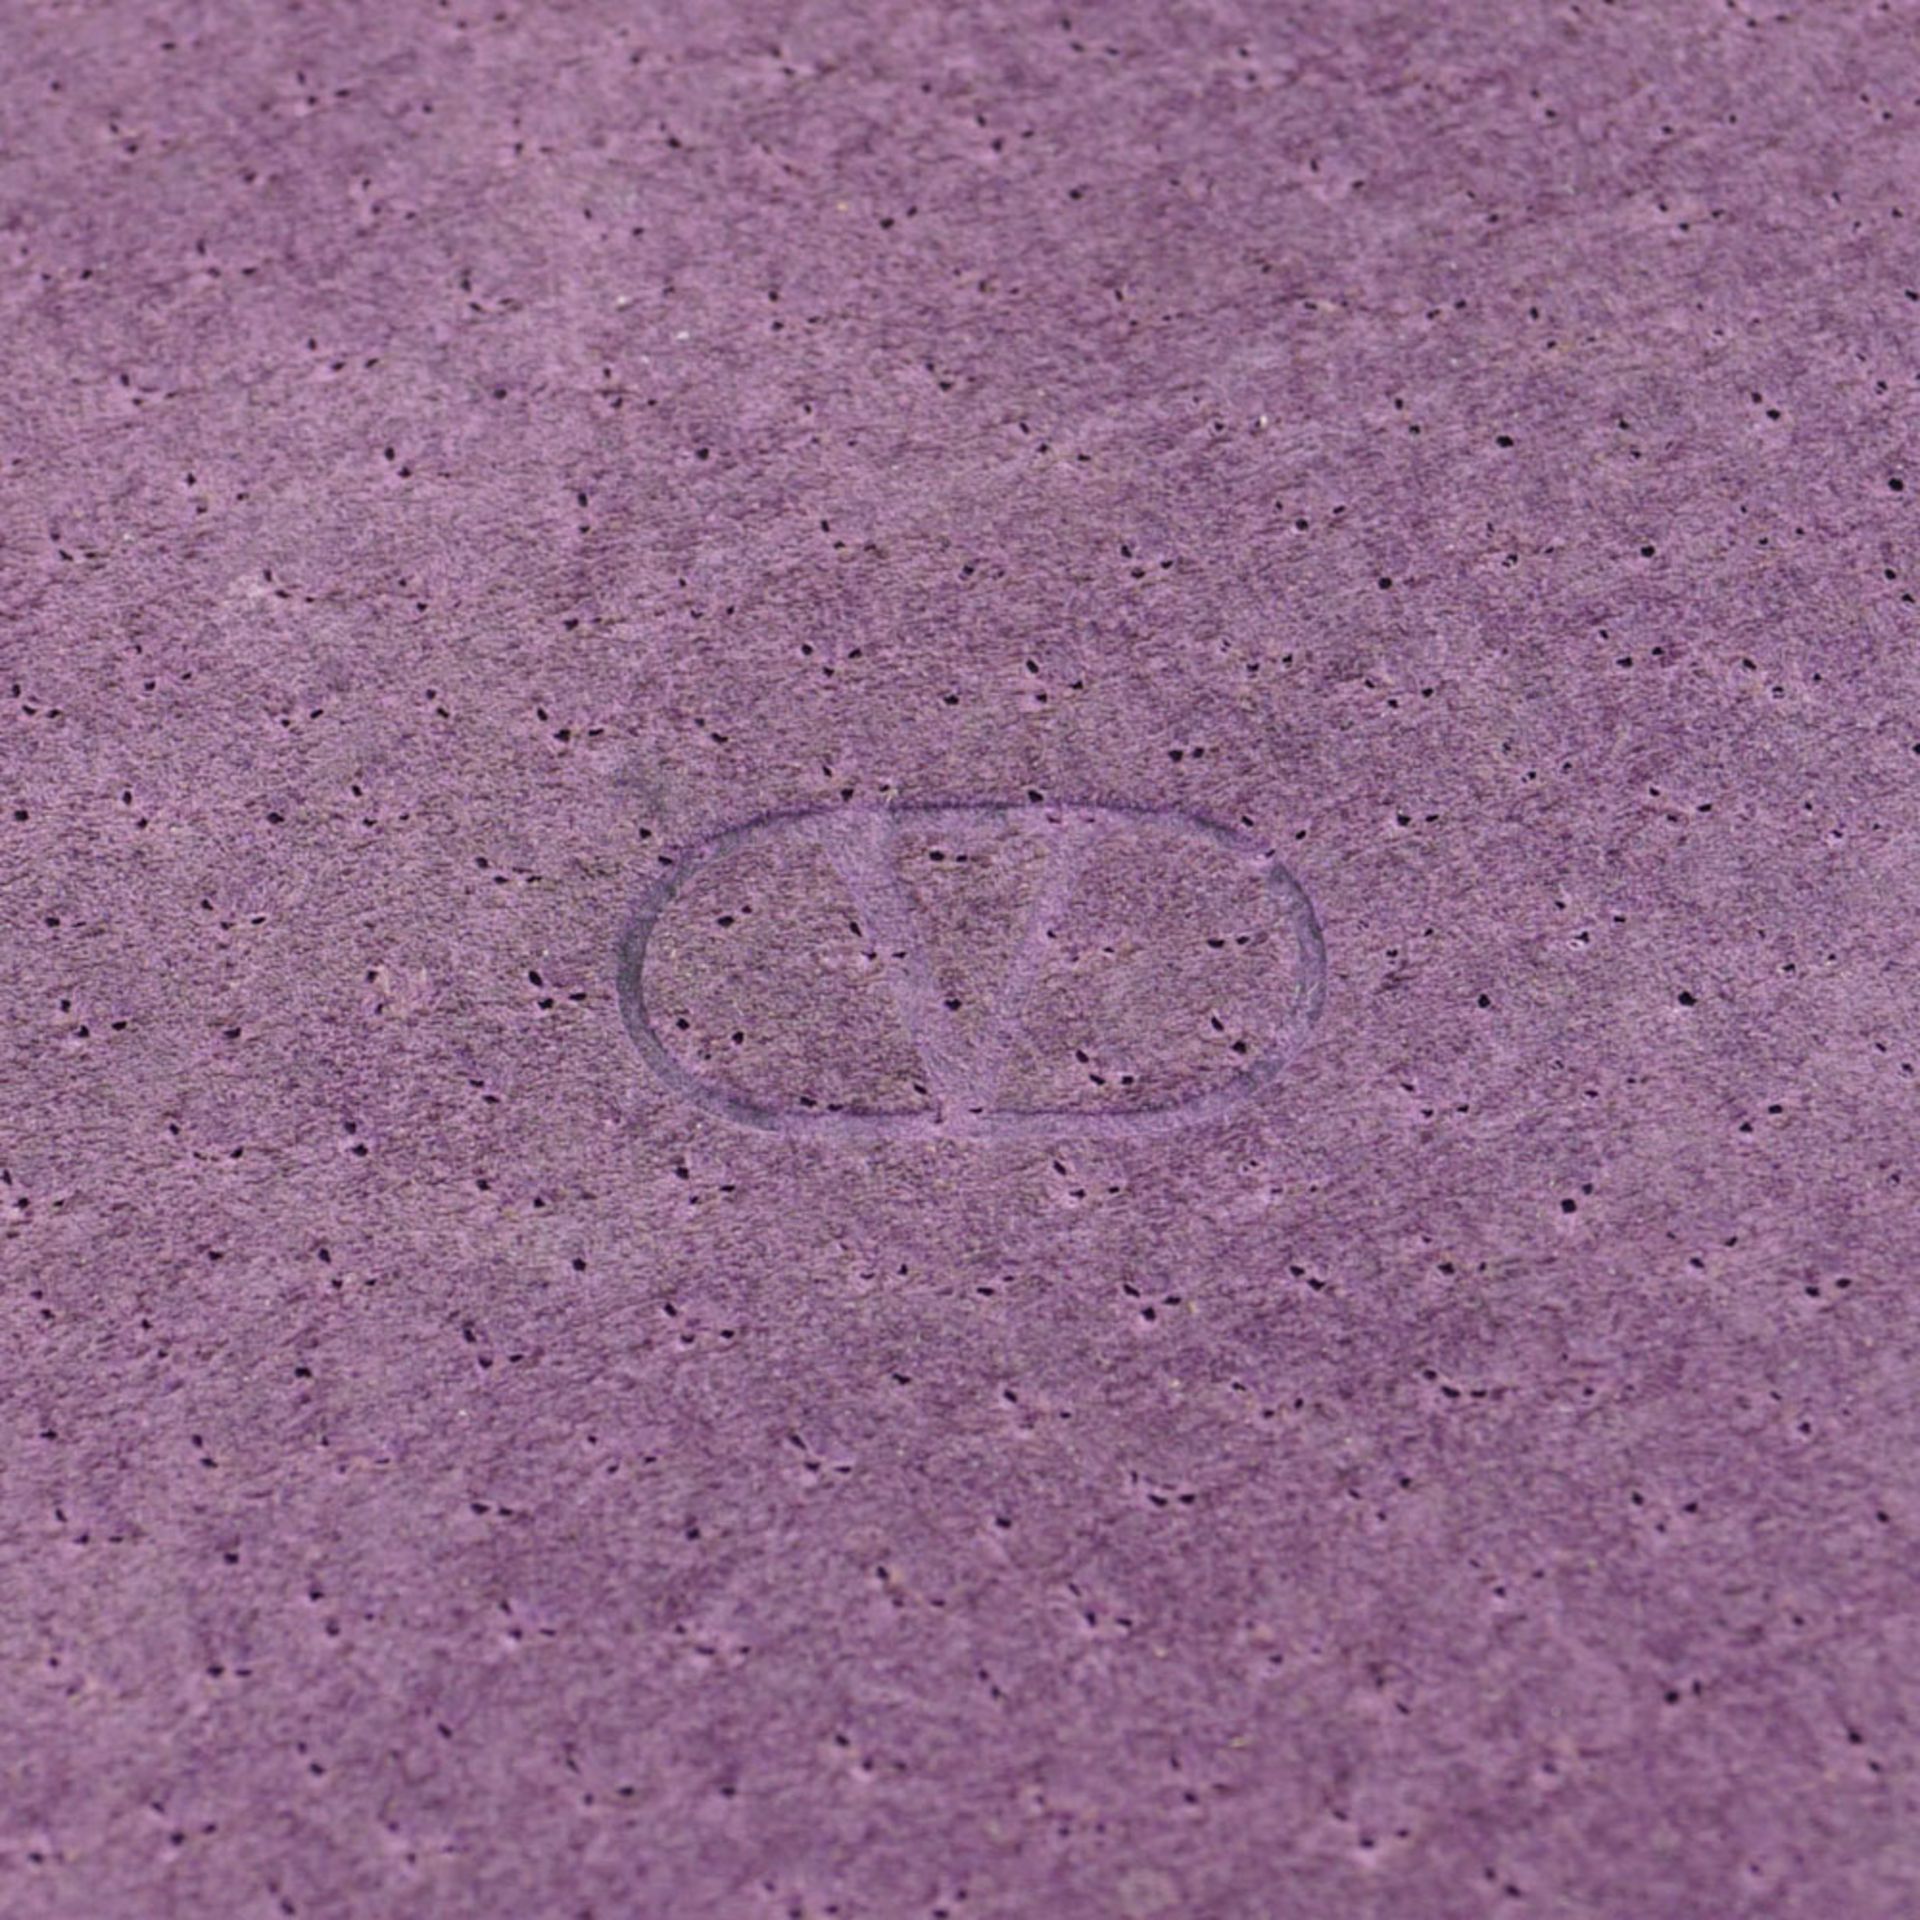 Valentino, vintage shoulder bag 12,8x9 cm. - Image 4 of 4